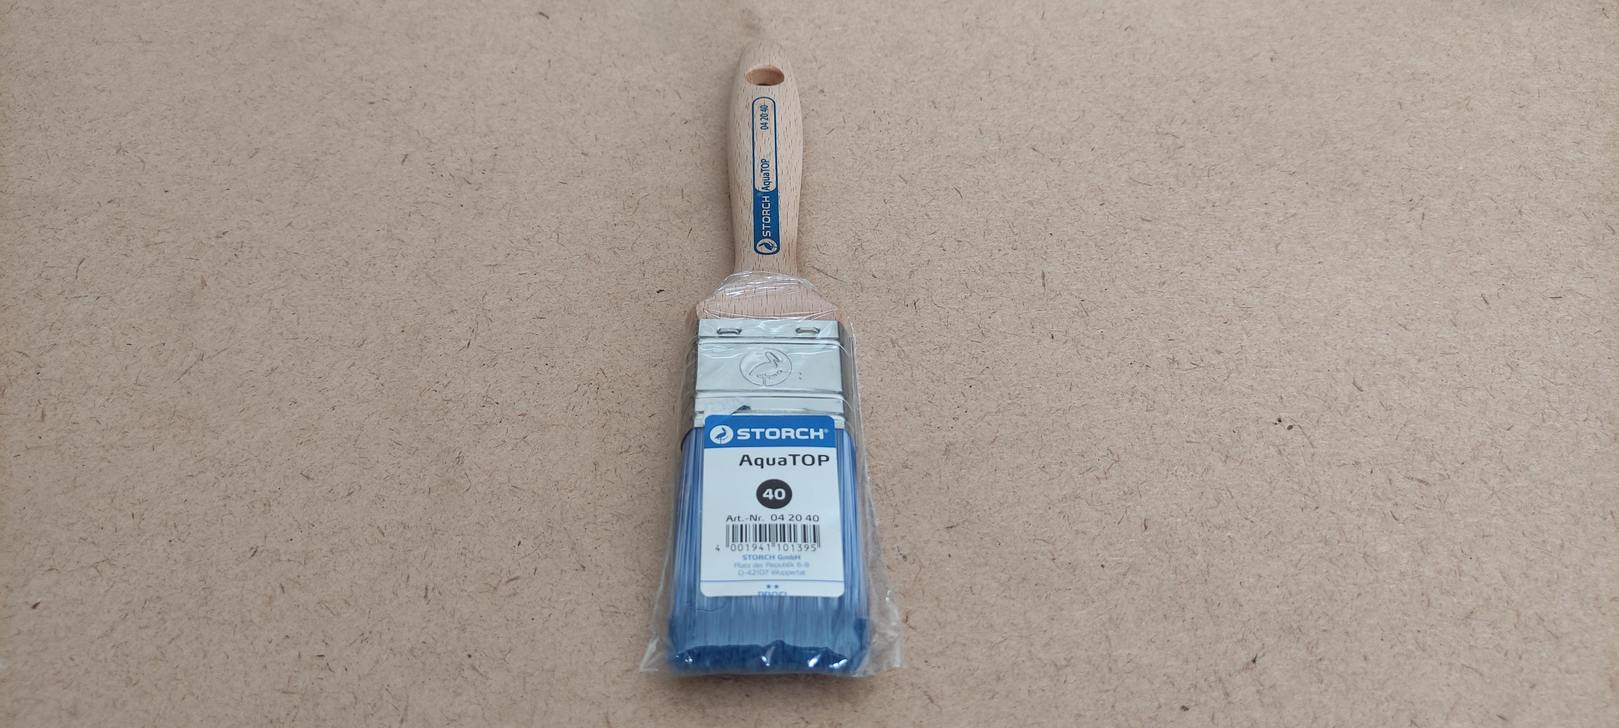 Кисть флейцевая AquaTop, 40 мм, размер 9, синтетическая щетина STORCH (042040)								